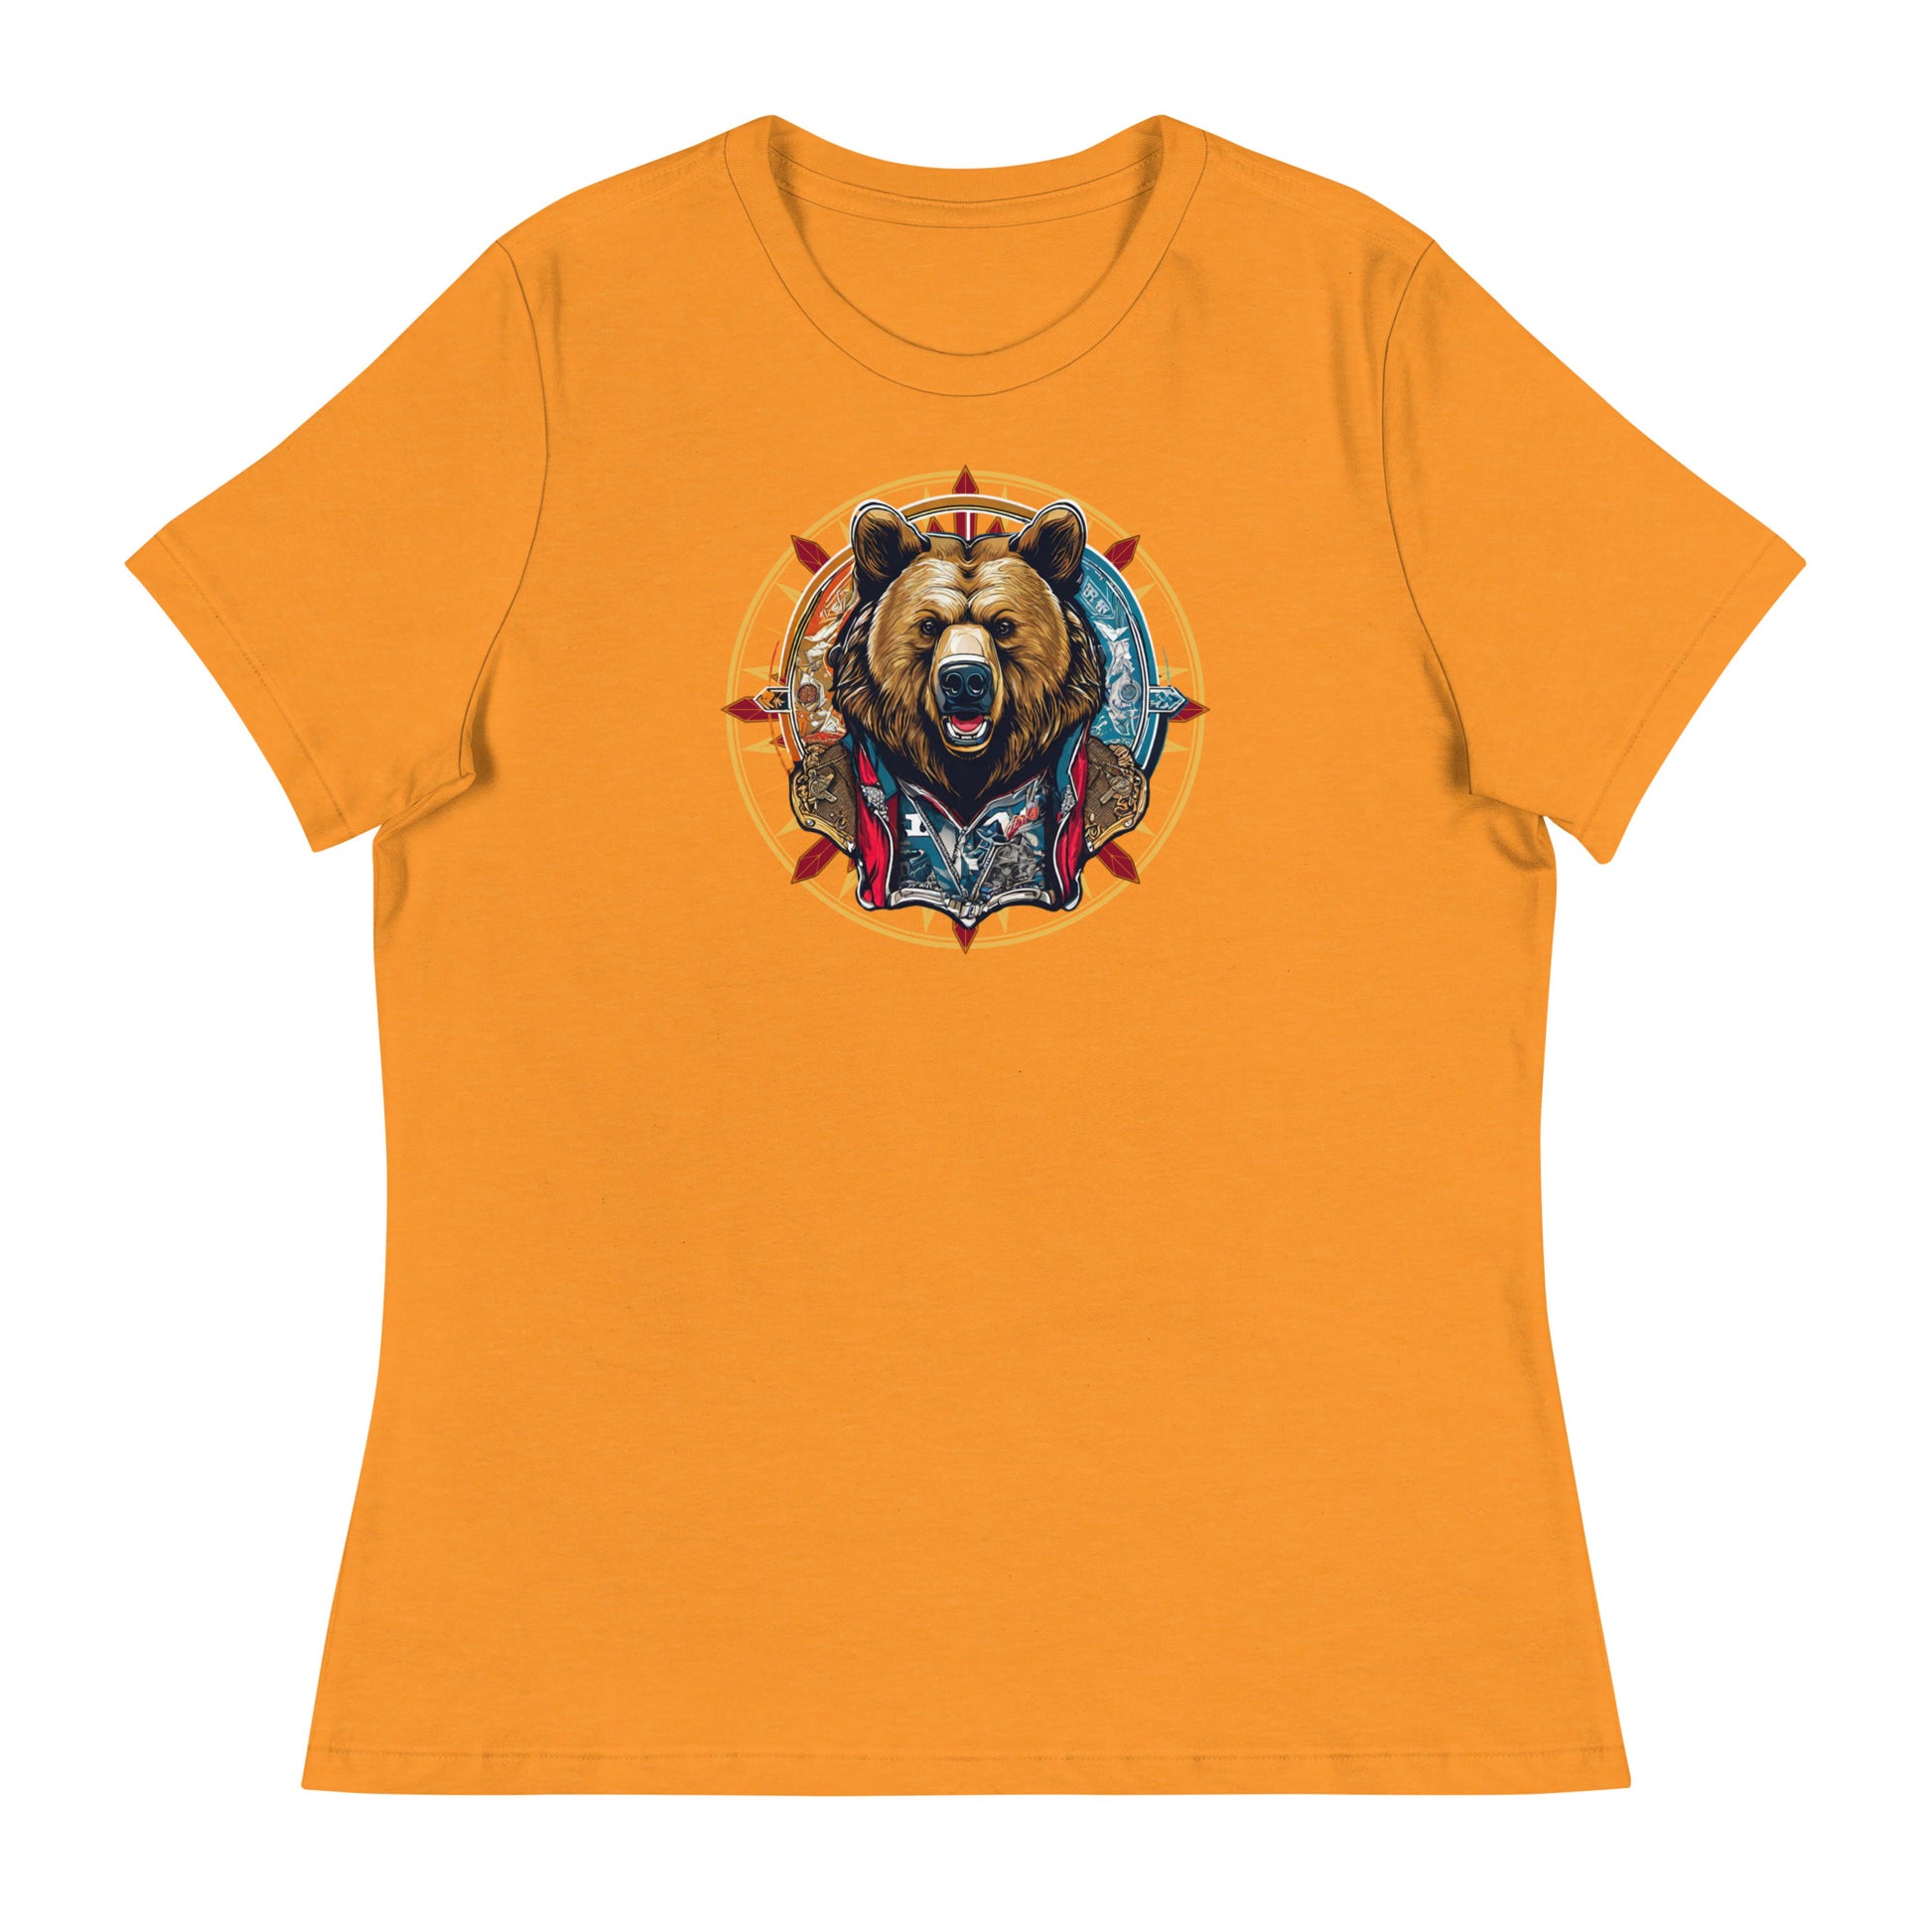 Bear Emblem Women's Graphic T-Shirt Heather Marmalade